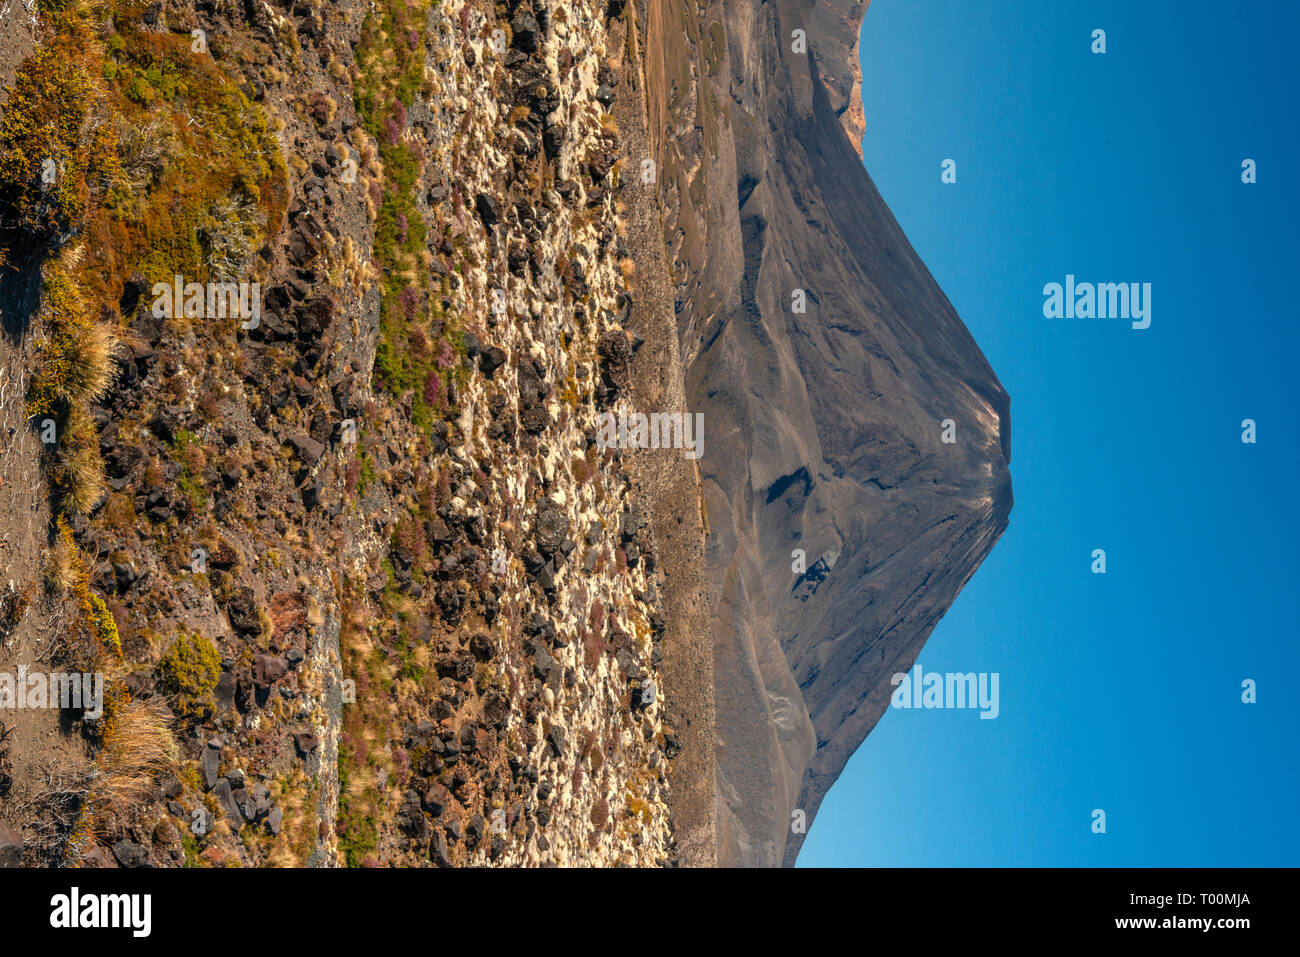 Mt Ngaruhoe, im Norden der Insel von Neuseeland, gesehen in der Nähe von Mt  Ruapehu. Dies wurde als Mt Doom im Film der Herr der Ringe verwendet  Stockfotografie - Alamy